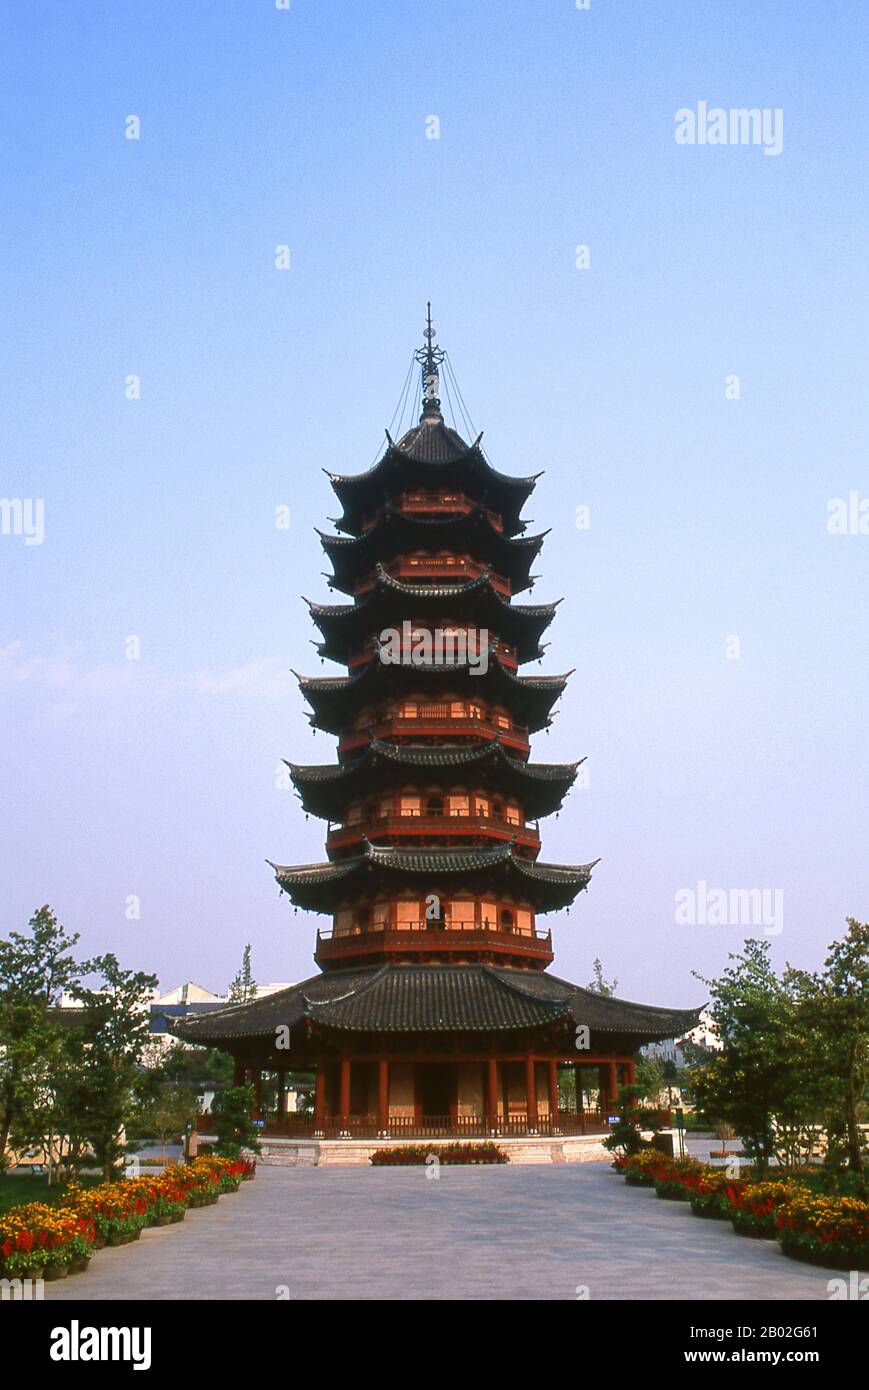 Die Ruiguang-Pagode (Ruiguang Ta) wurde 247 CE erbaut und ist die älteste Pagode in Suzhou. Suzhou, die Stadt der Kanäle und Gärten, wurde von Marco Polo "Venedig des Ostens" genannt. Ein altes chinesisches Sprichwort besagt: "Im Himmel gibt es das Paradies; auf der Erde gibt es Suzhou". Die Liebesbeziehung der Stadt mit Gärten geht auf 2.500 Jahre zurück und dauert immer noch an. Zur Zeit der Ming-Dynastie (1368-1644) gab es 250 Gärten, von denen etwa hundert überleben, obwohl nur wenige für die Öffentlichkeit zugänglich sind. Stockfoto